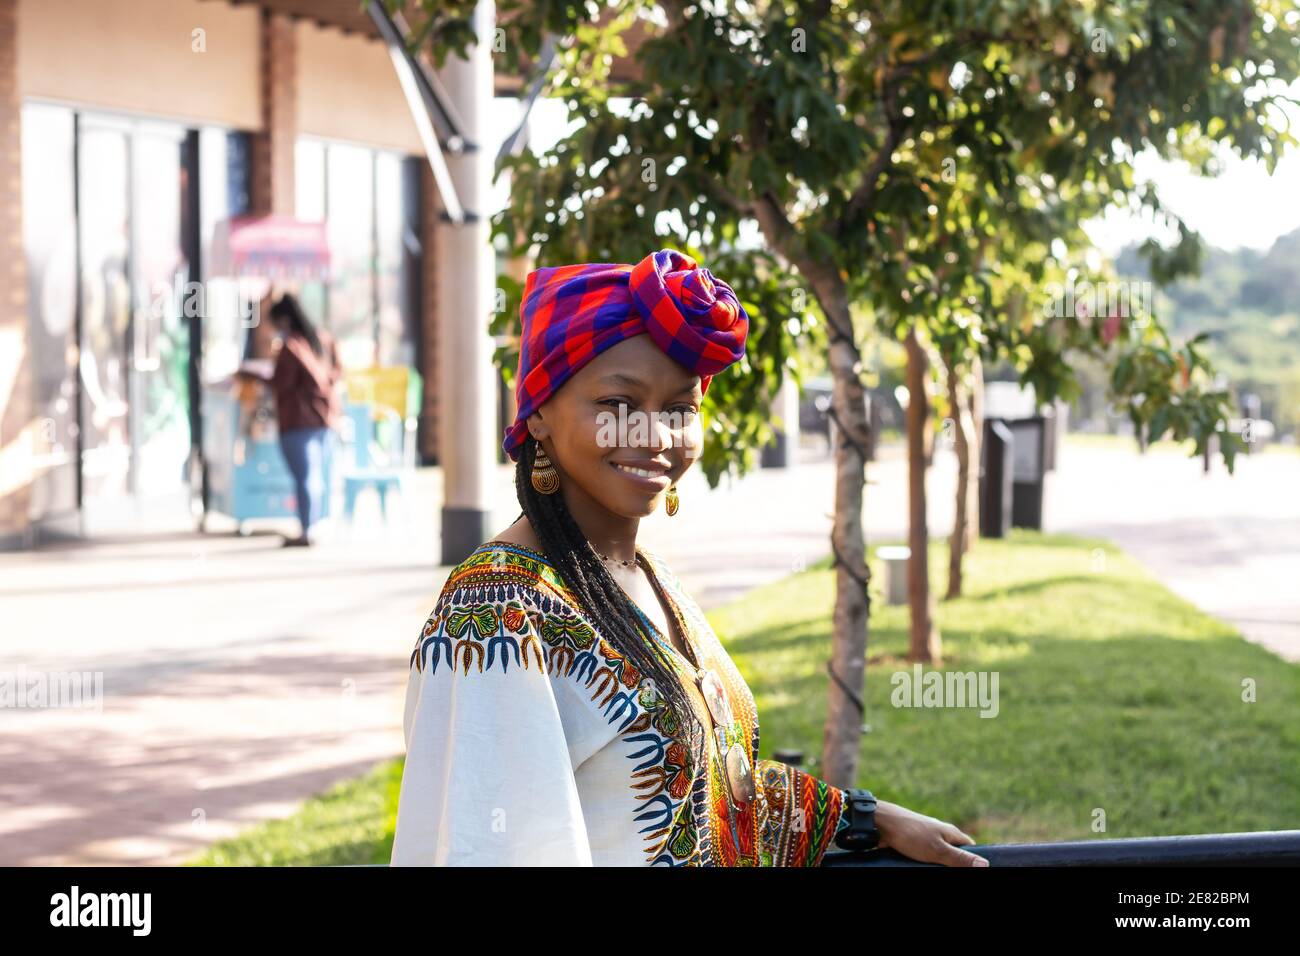 Femme noire tendance vêtue de vêtements ethniques de style africain traditionnel foulard Banque D'Images